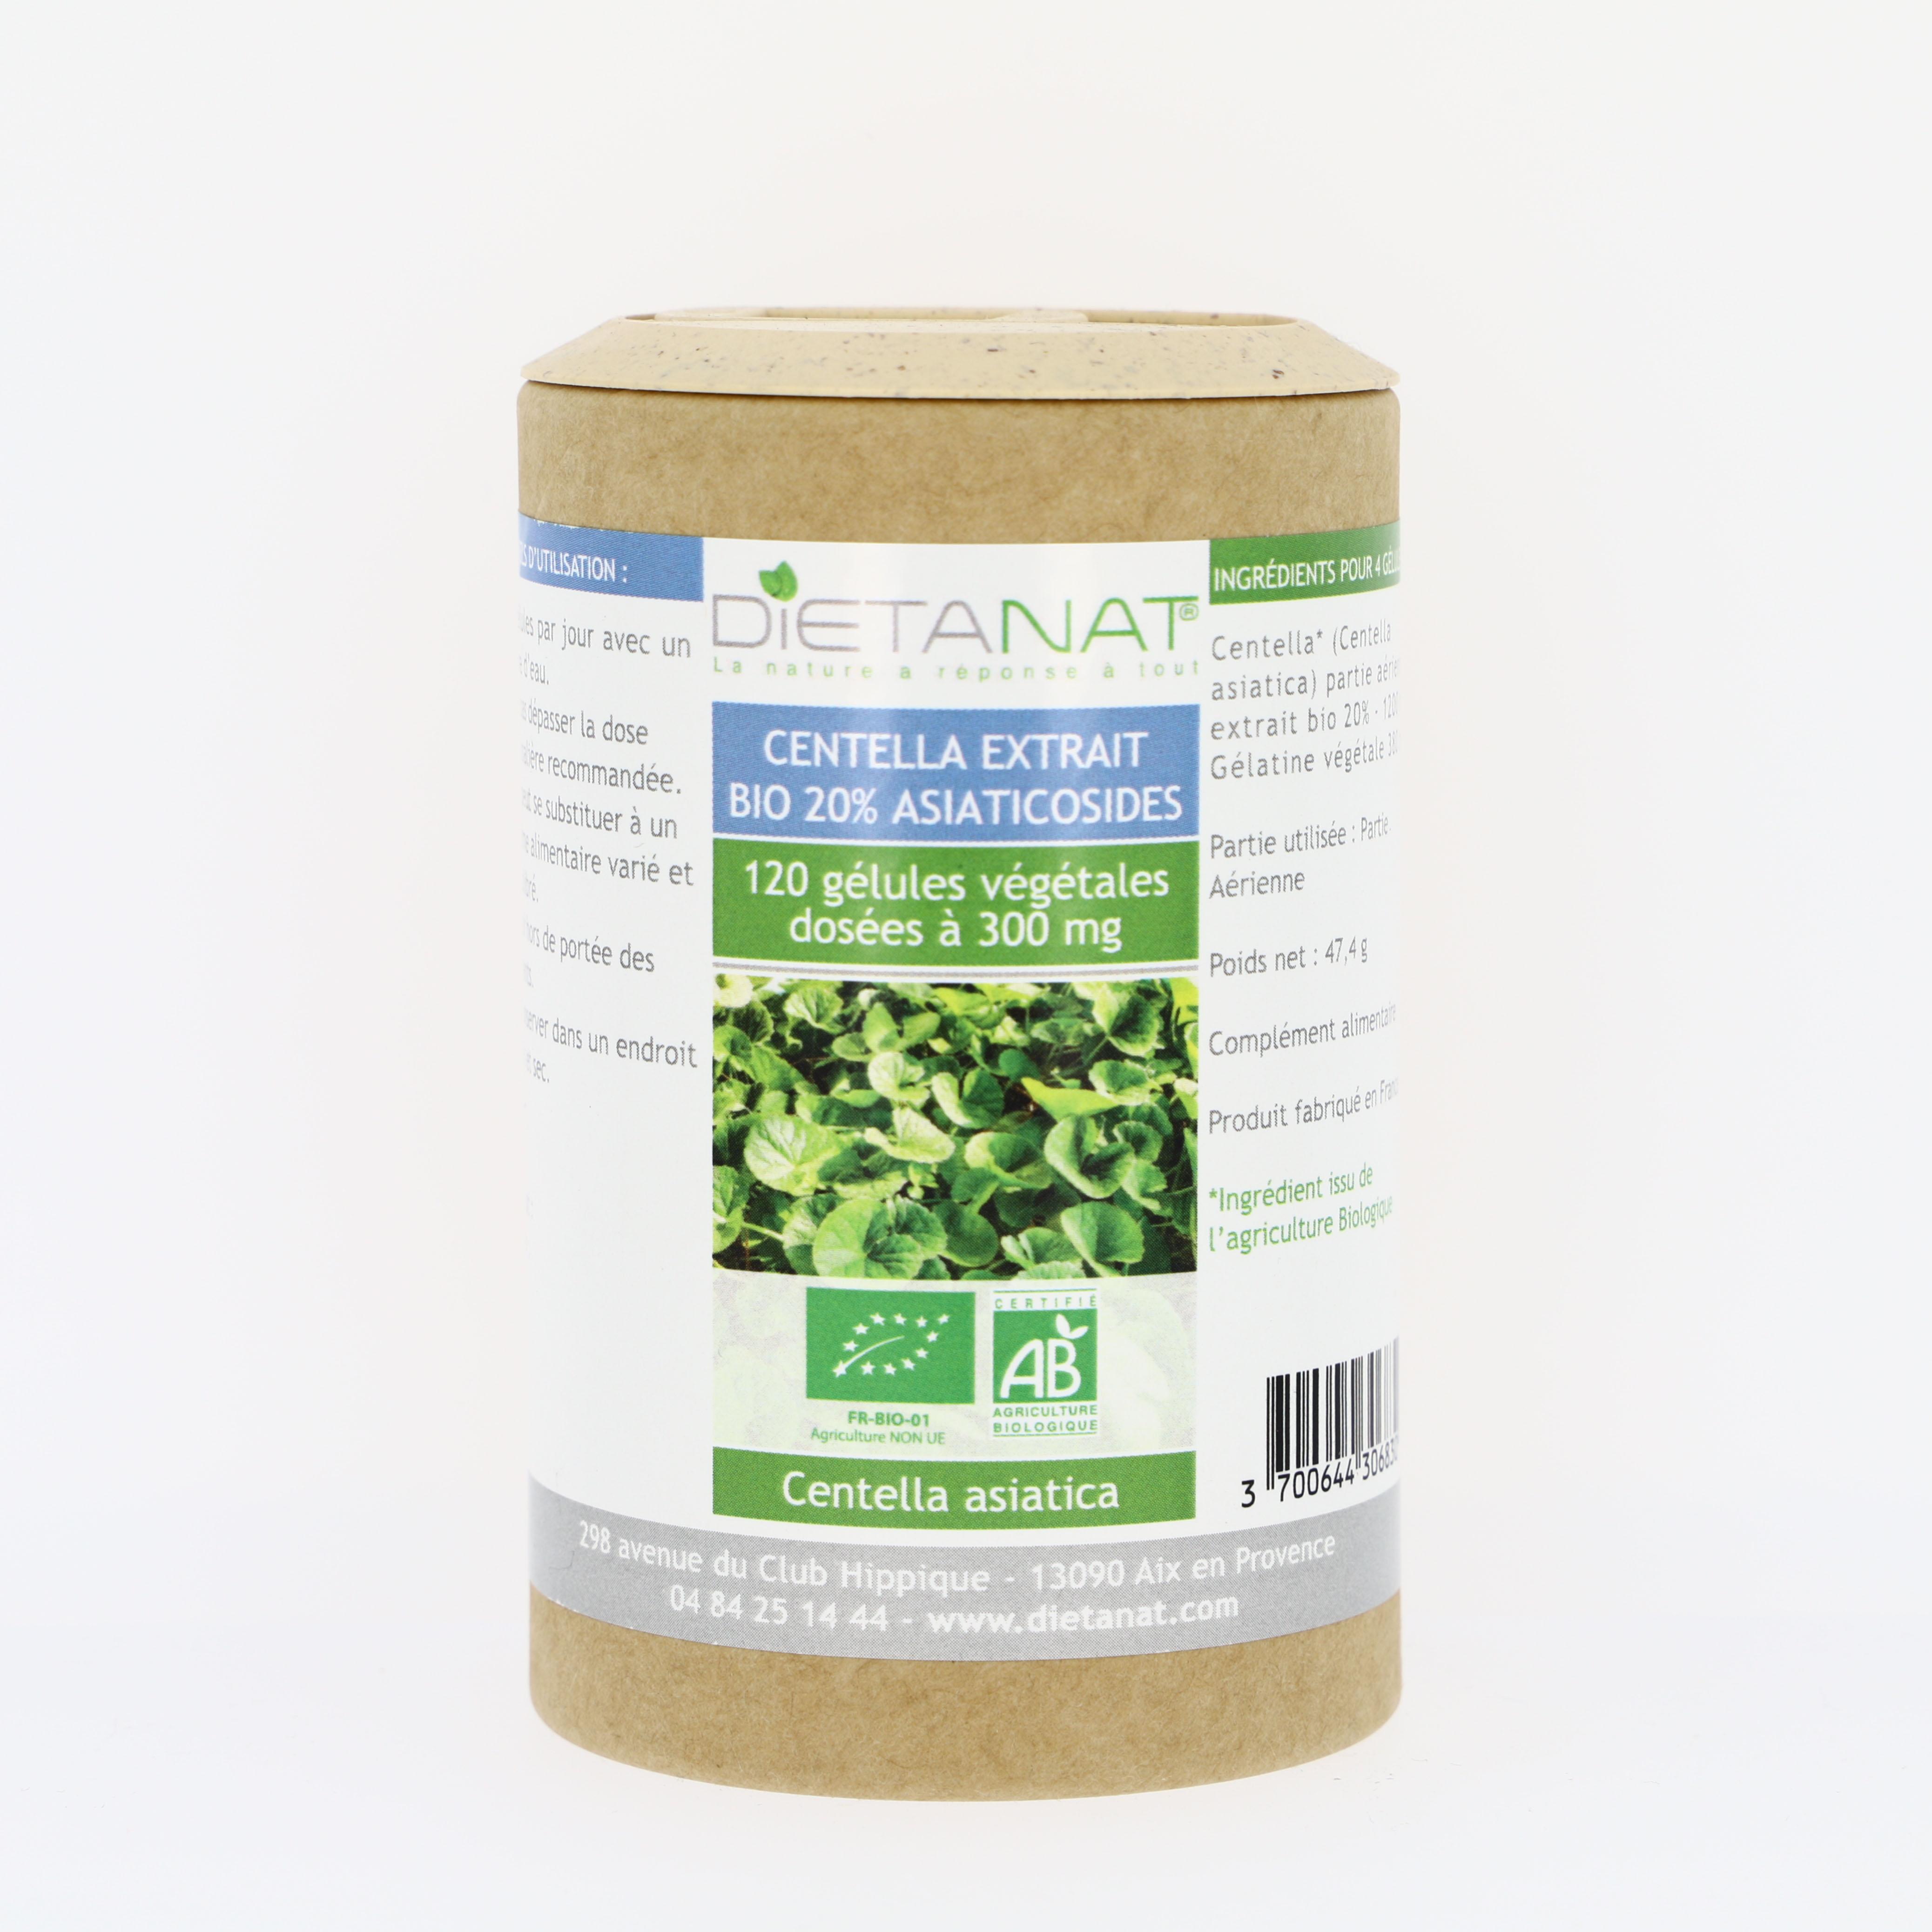 Centella asiatica extrait bio 20% asiaticosides - 120 gélules végétales 300mg